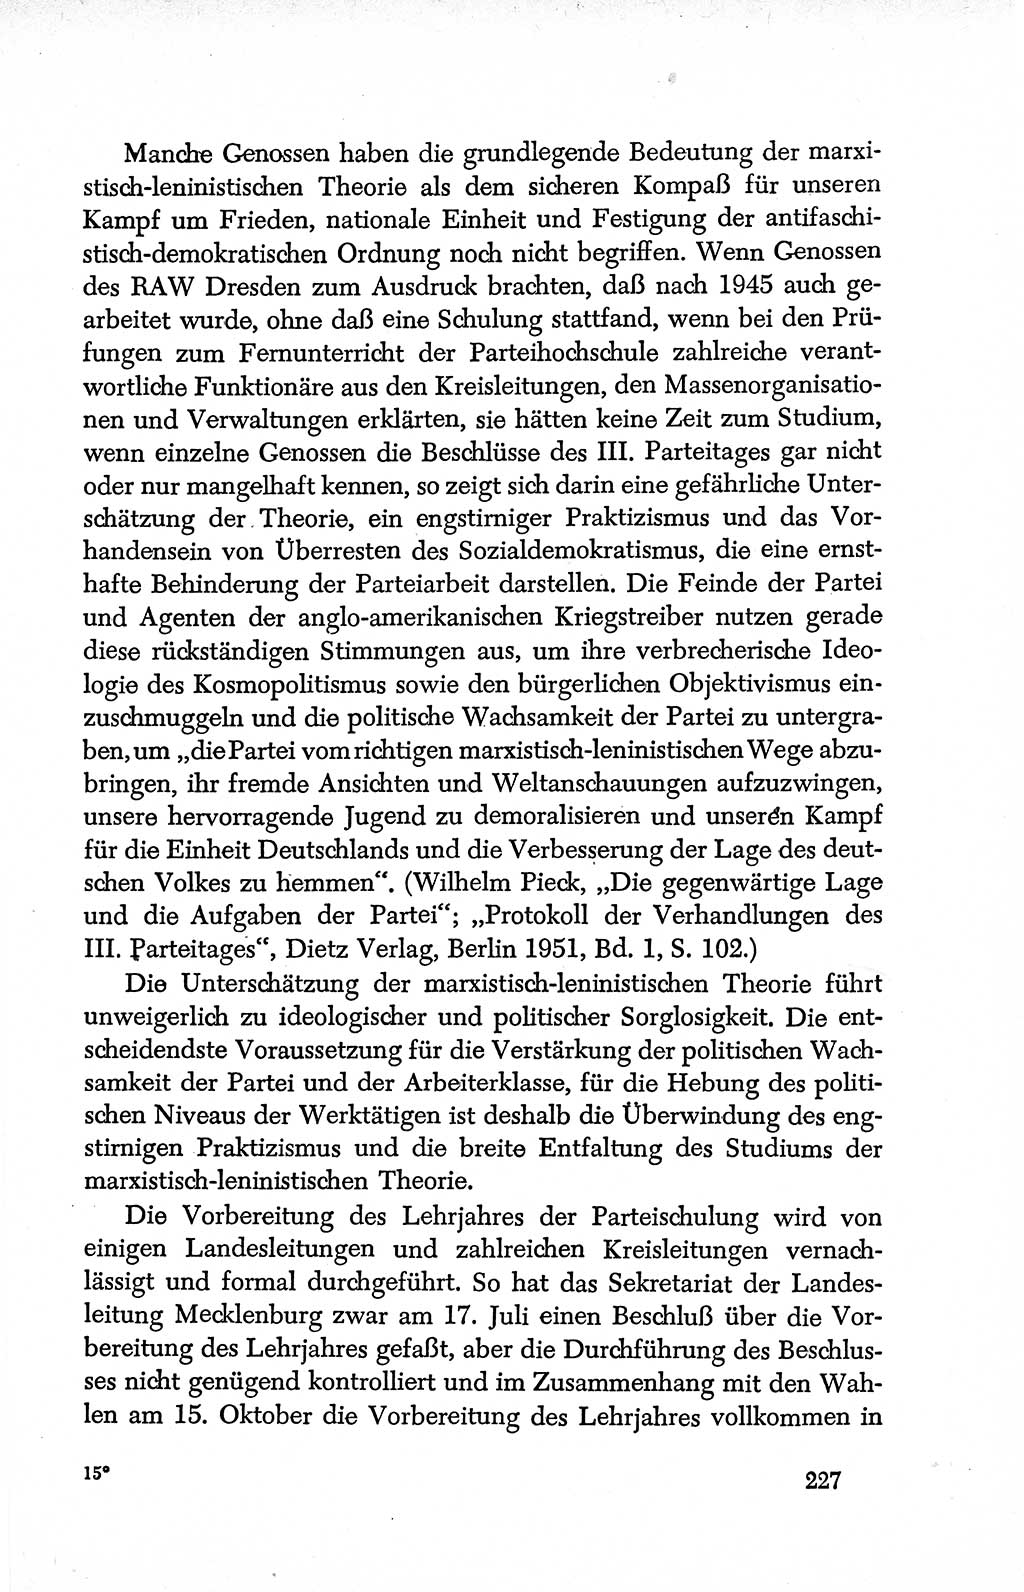 Dokumente der Sozialistischen Einheitspartei Deutschlands (SED) [Deutsche Demokratische Republik (DDR)] 1950-1952, Seite 227 (Dok. SED DDR 1950-1952, S. 227)